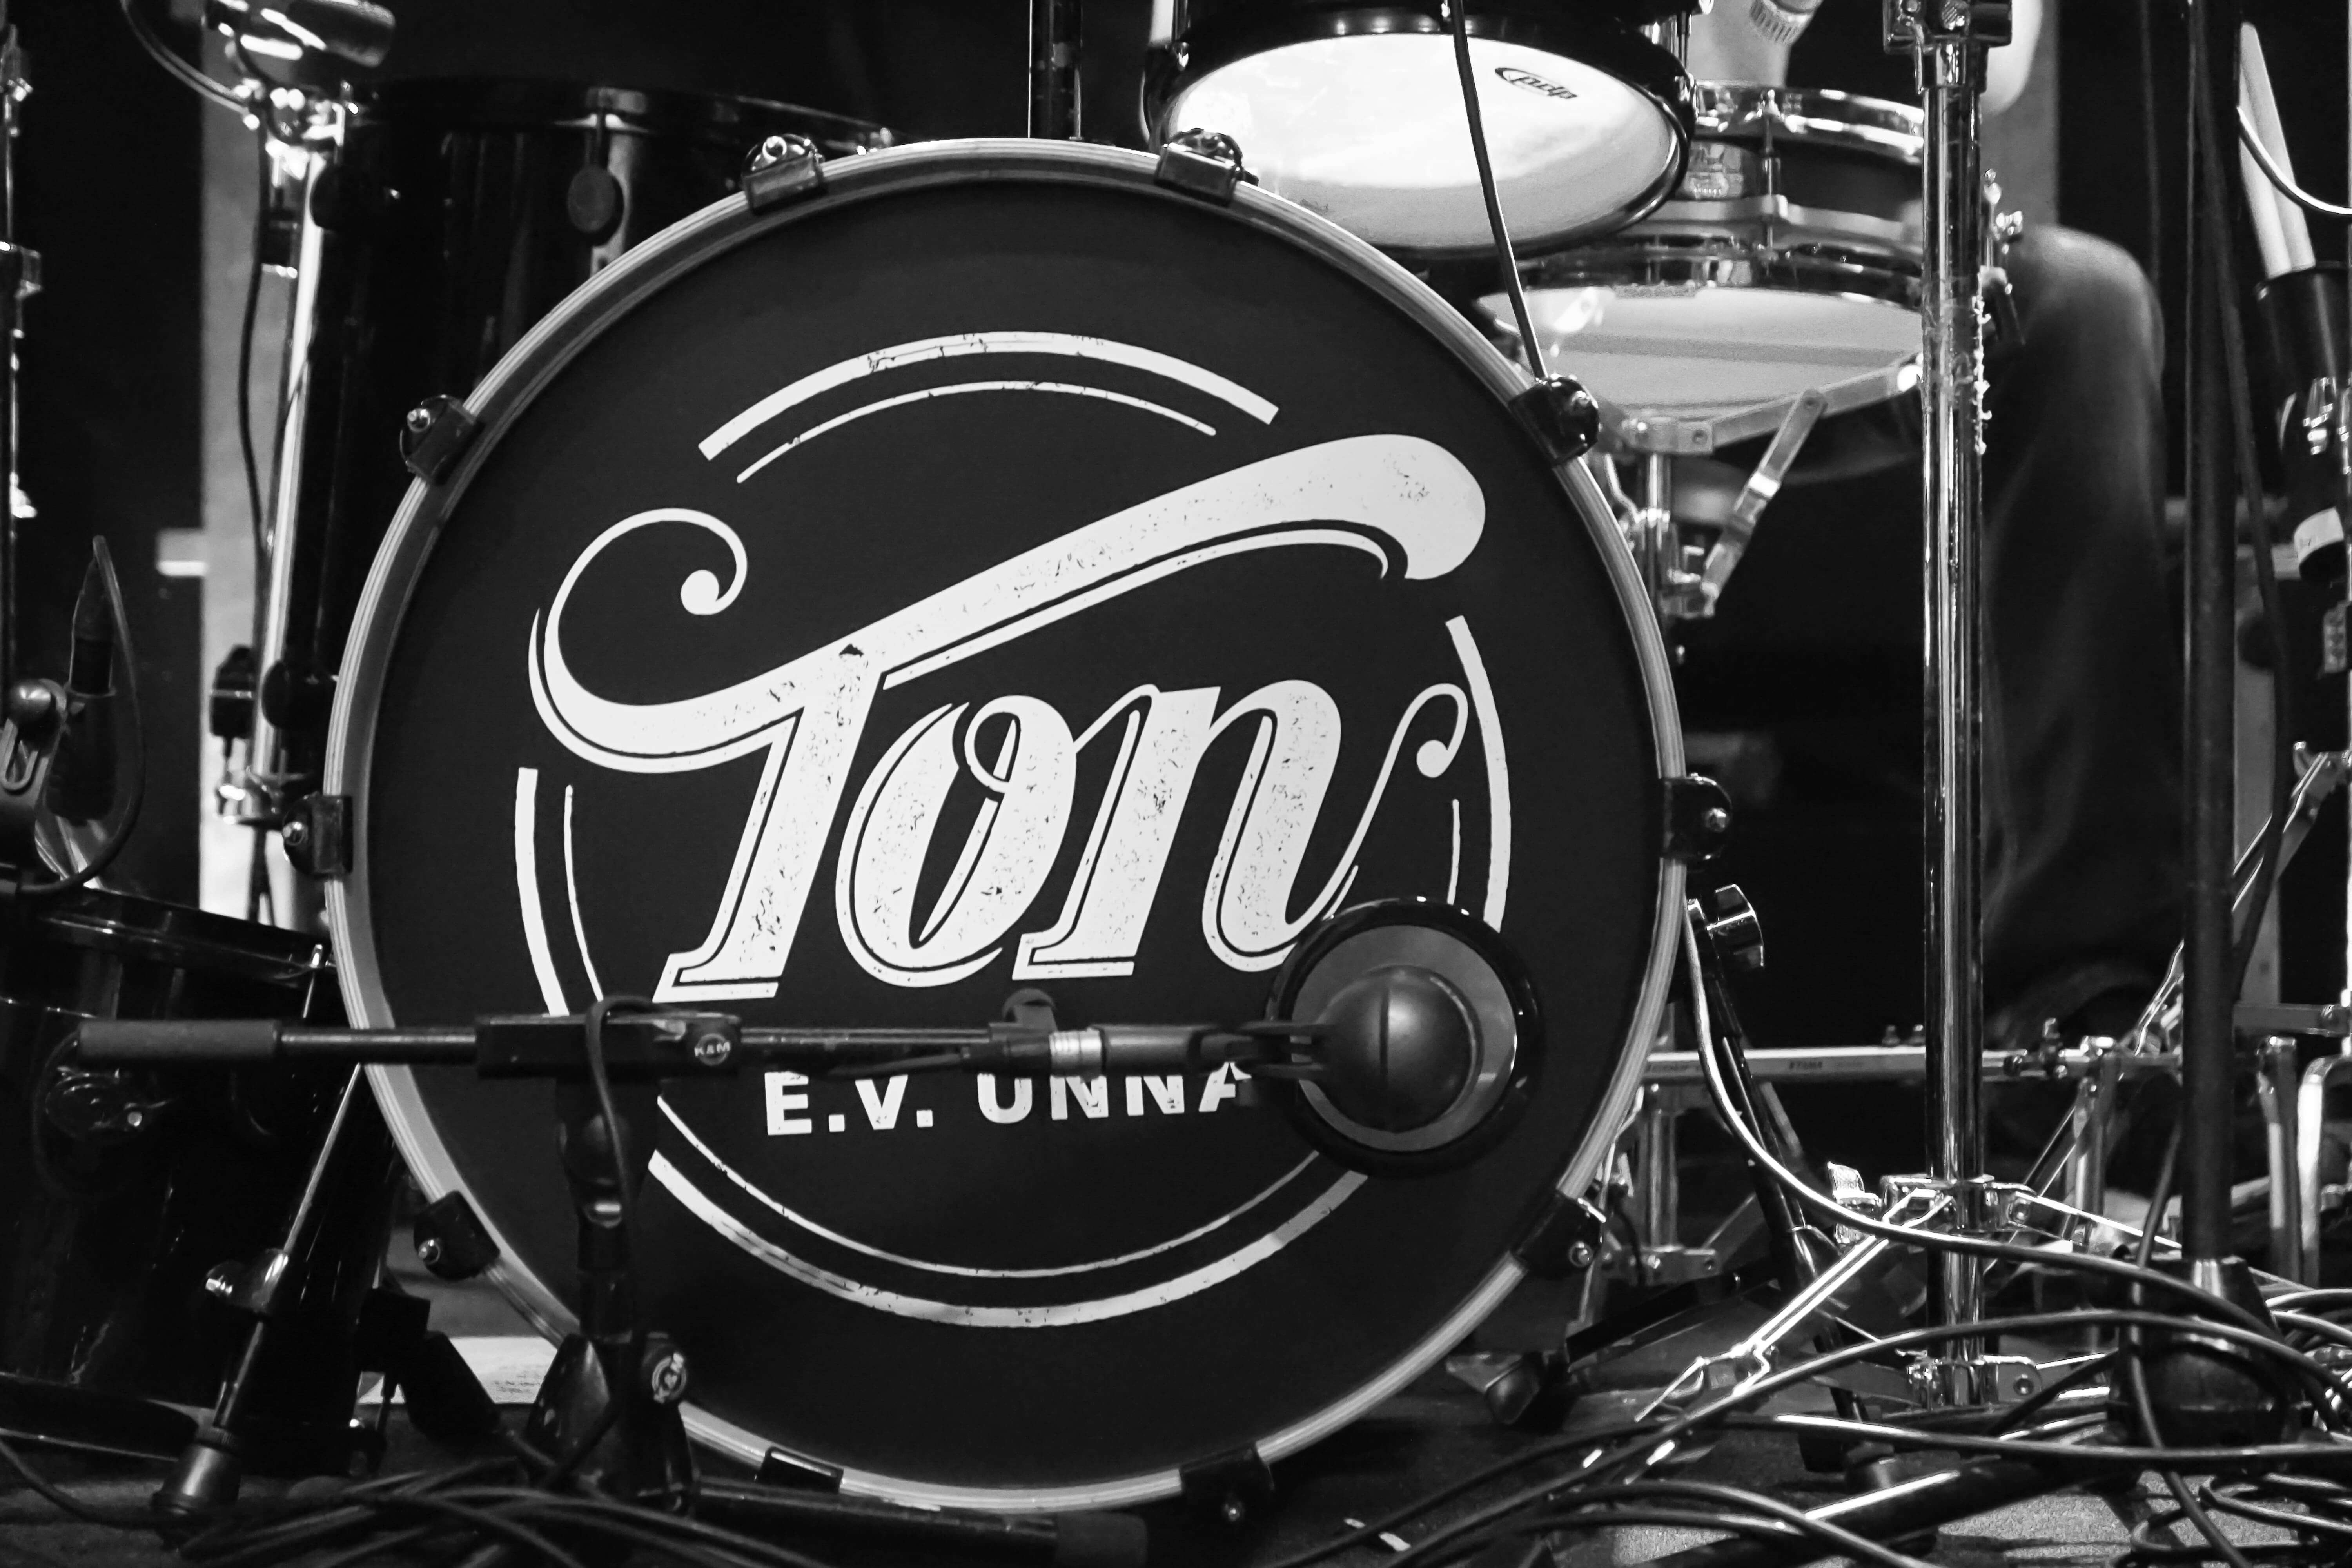 Drumkit from Ton e.V.